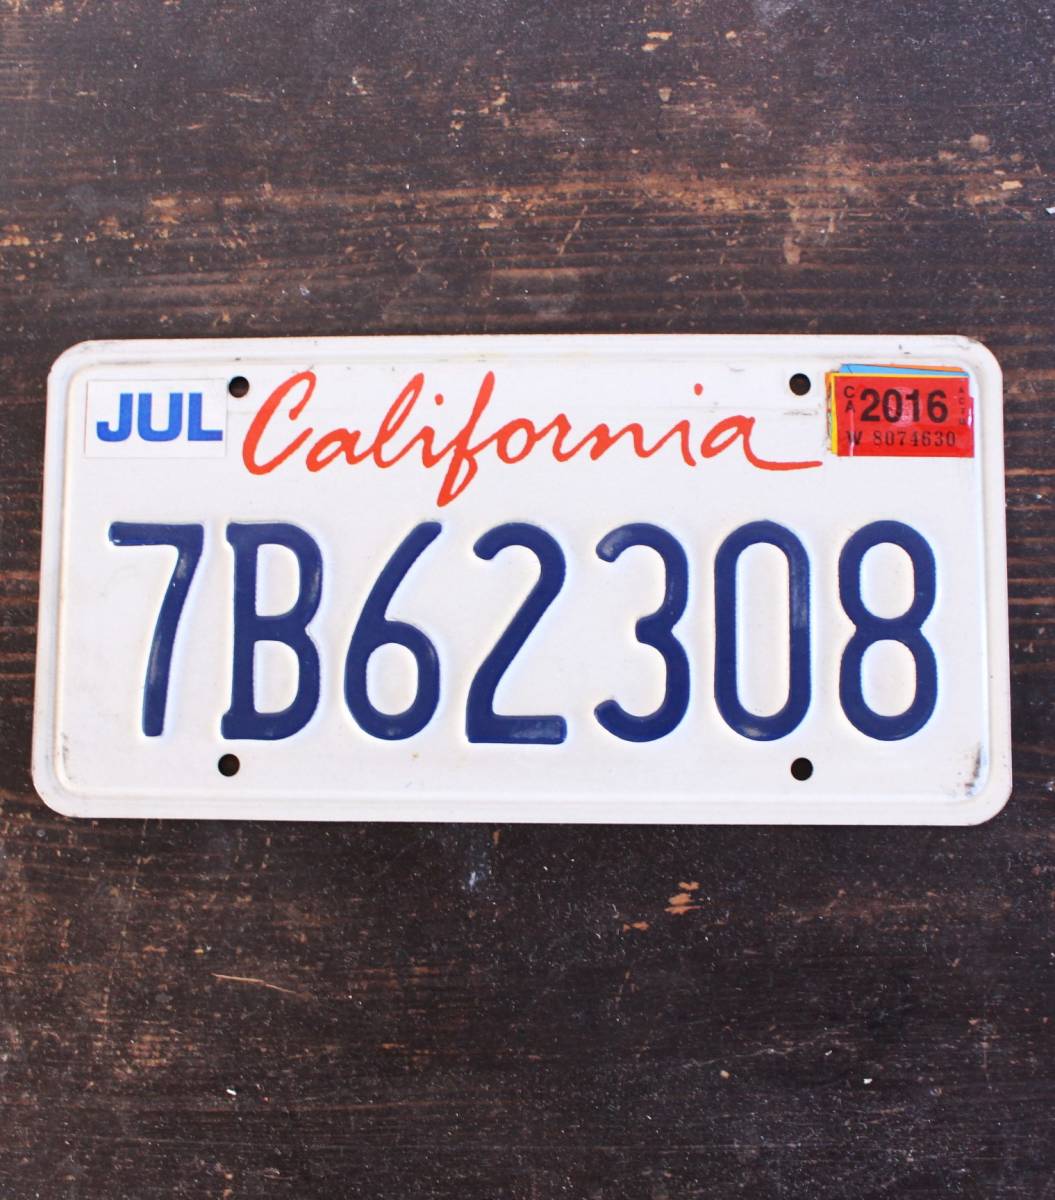 【クリックポスト 送料無料】* カリフォルニア ナンバープレート 2016年 ライセンスプレート カープレート CALIFORNIA 「7B62308」 128_画像1